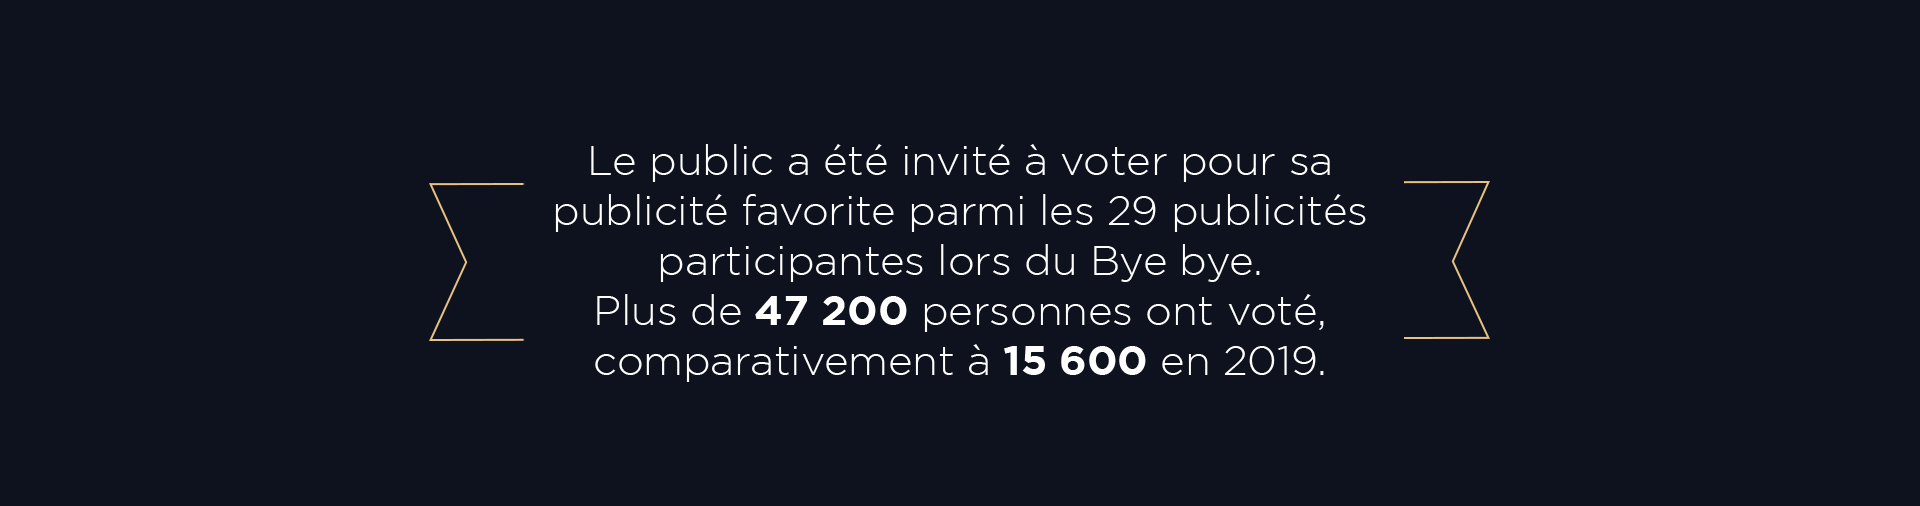 Le public a été invité à voter pour sa publicité favorite parmi les 29 publicités participantes lors du Bye bye. Plus de 47 200 personnes ont voté, comparativement à 15 600 en 2019.